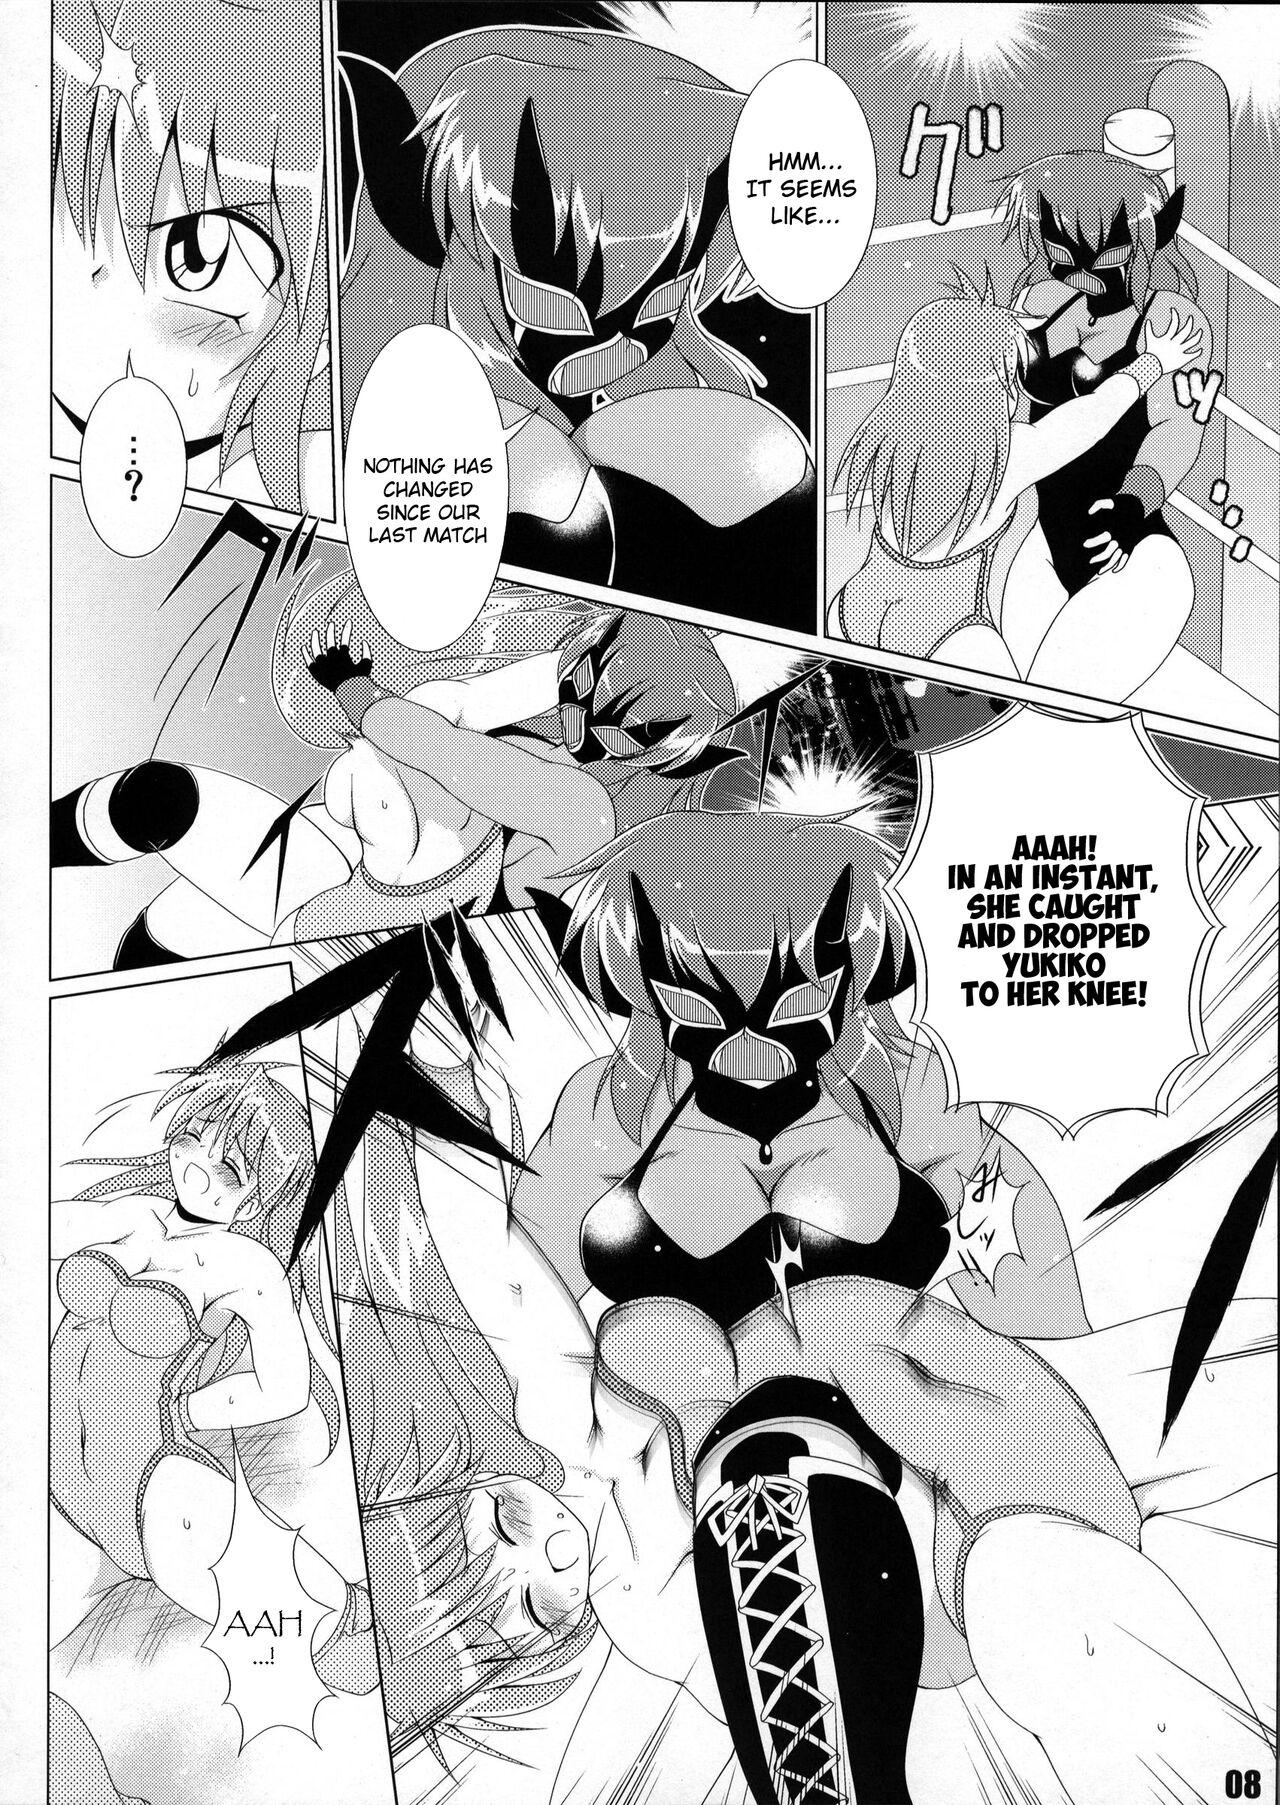 Fucked Hard (COMIC1☆6) [Soket=Pocket (Soket)] Mighty Yukiko vs Dark Star Chaos (FALLIN' ANGELS4 (WRESTLE ANGELS)) - Wrestle angels Culo Grande - Page 4